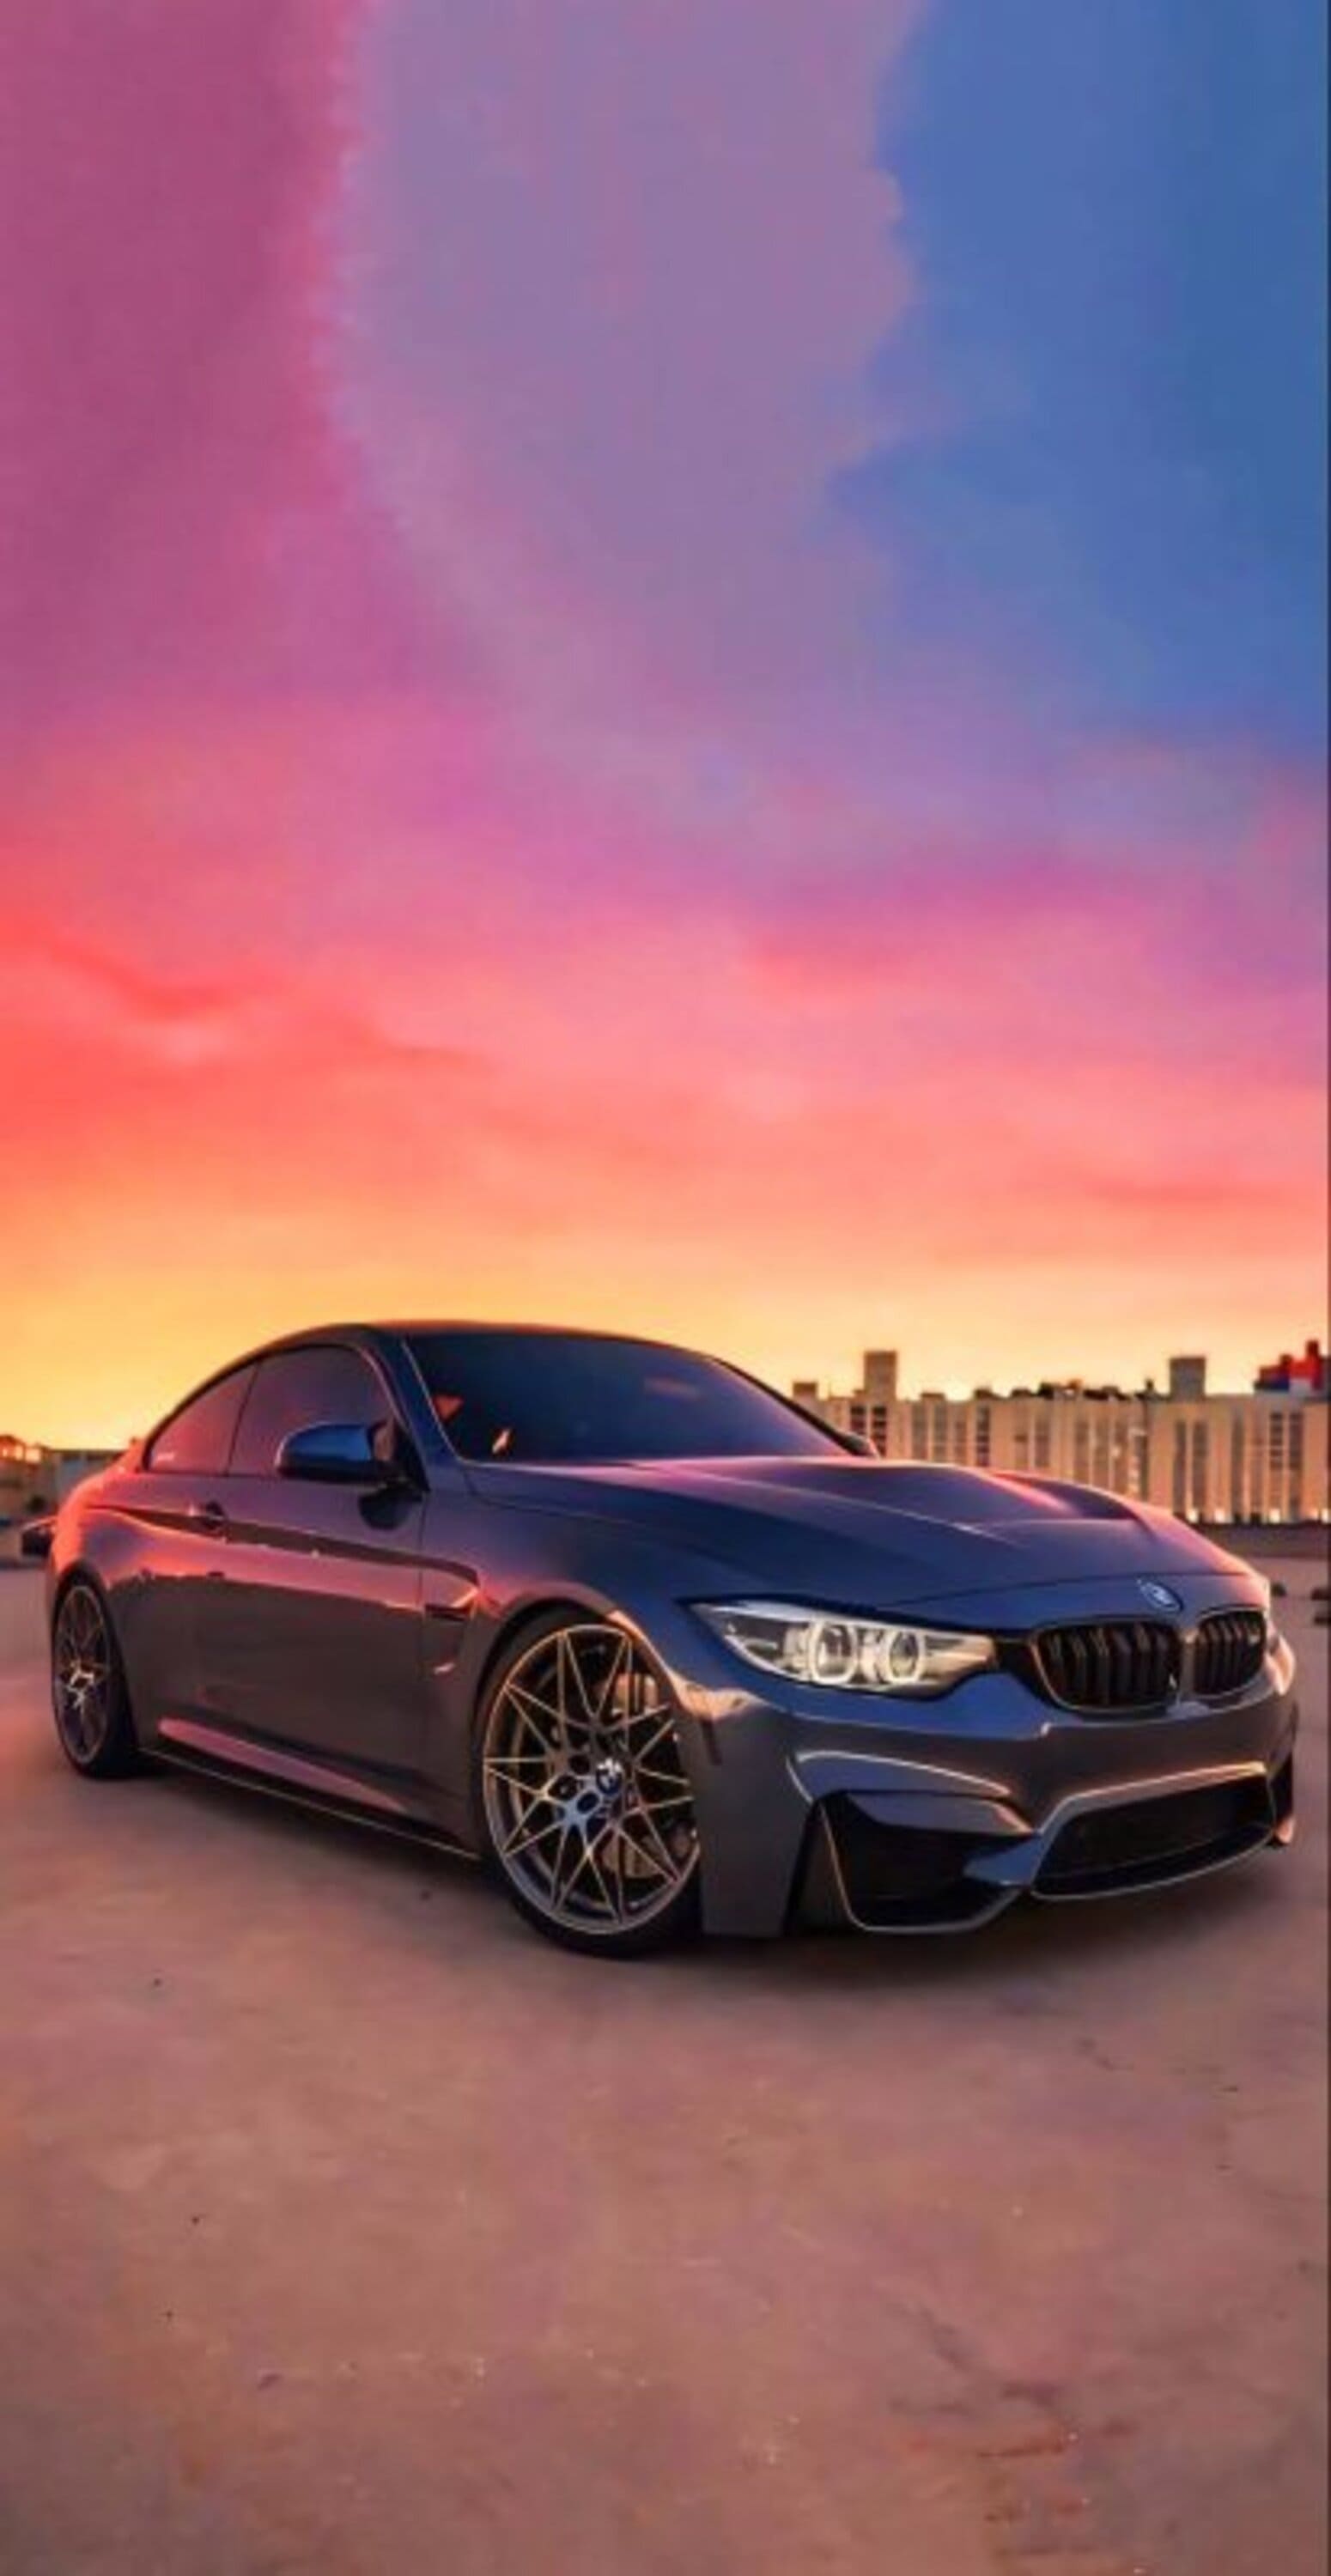 خلفية سيارة BMW 3 Series سوداء بدقة HD، افخم خلفيات سيارات BMW